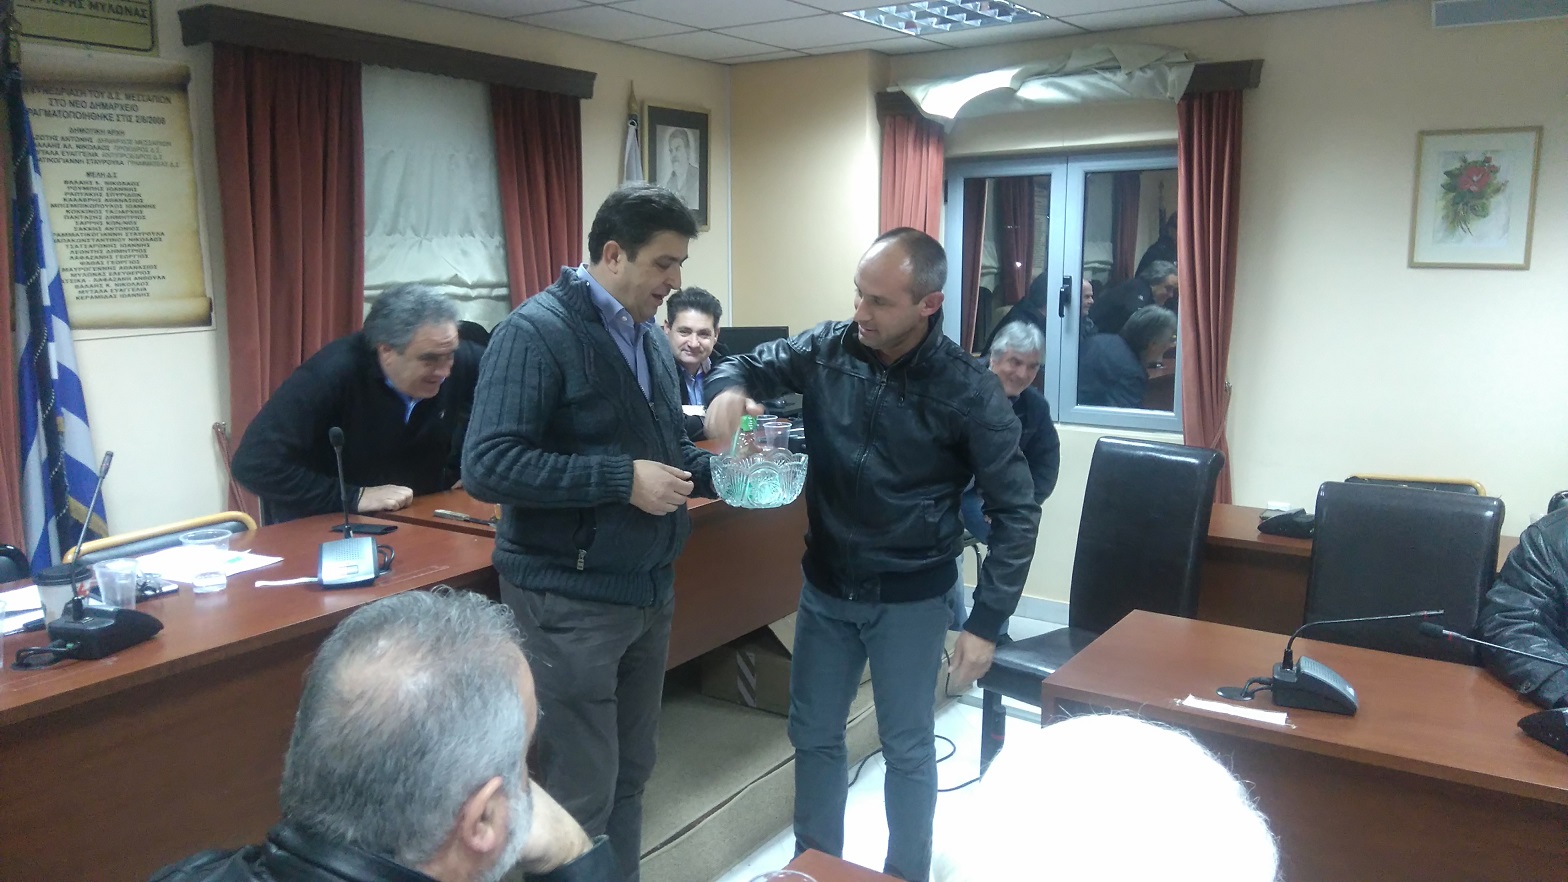 Εκδήλωση κοπής πίτας  σωματείων Δήμου Διρφύων Μεσσαπίων DSC 1232